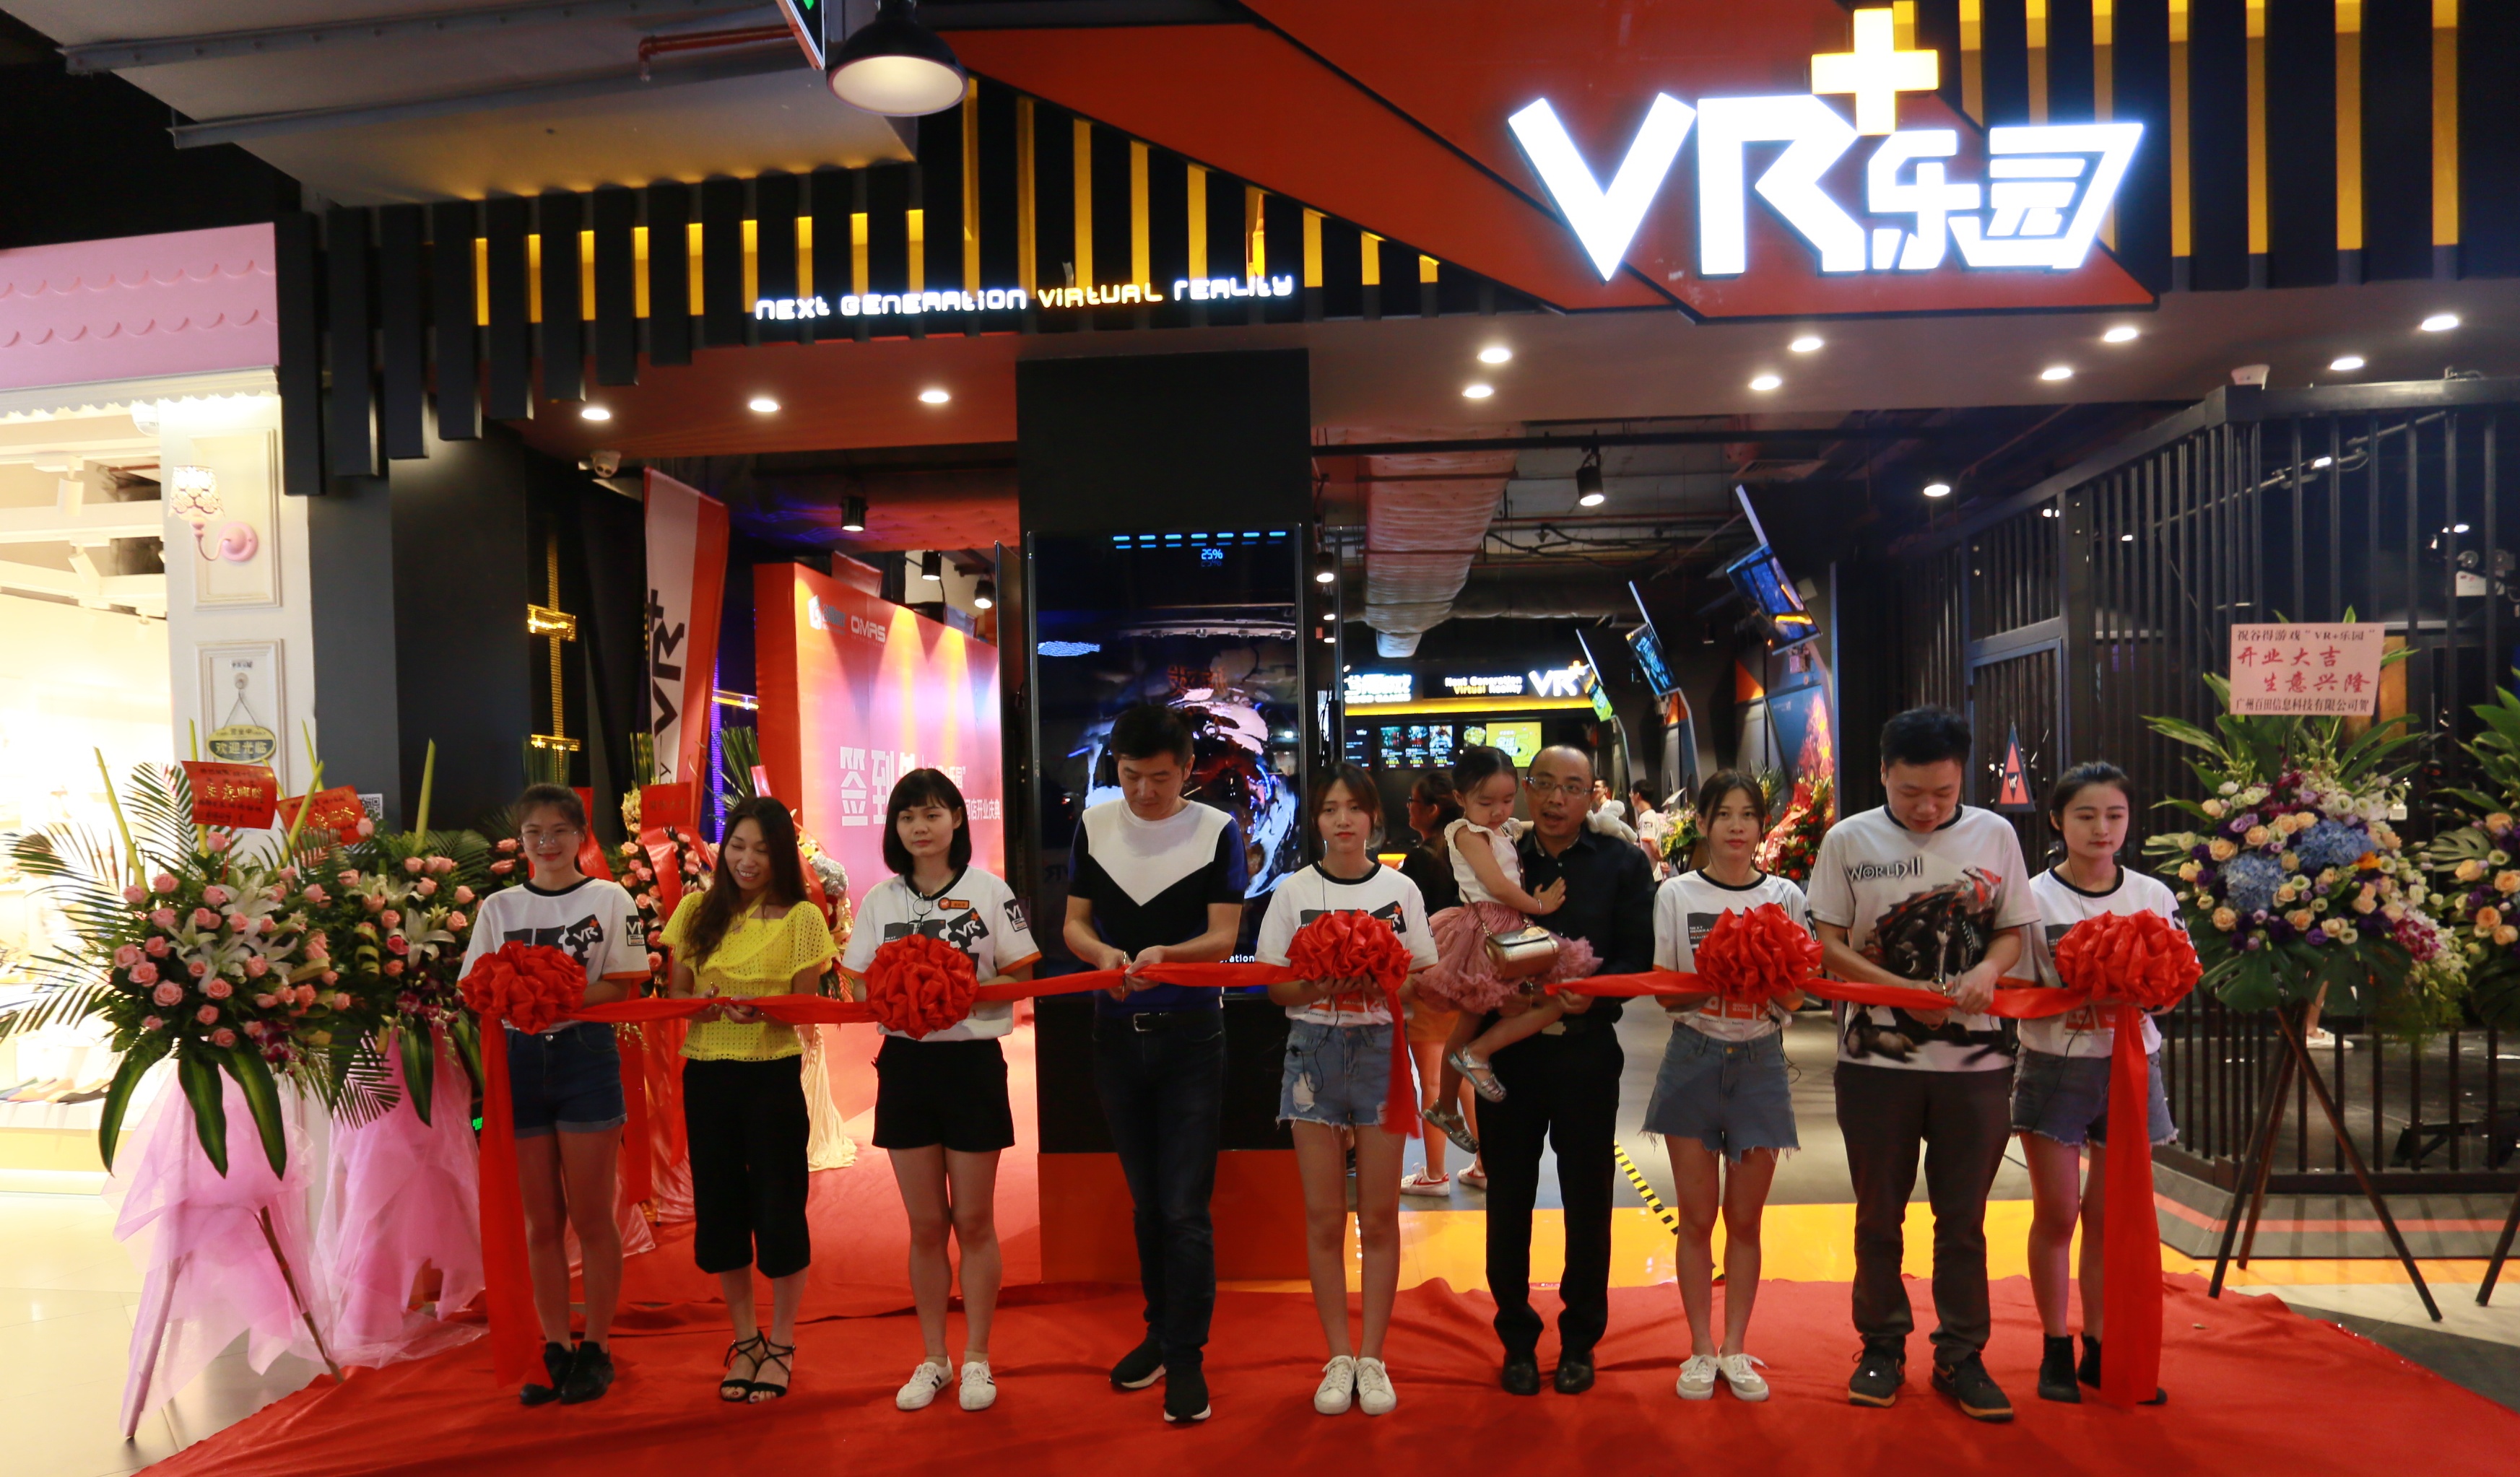 大型游戏实景体验馆“VR+乐园”6月28日开始试业